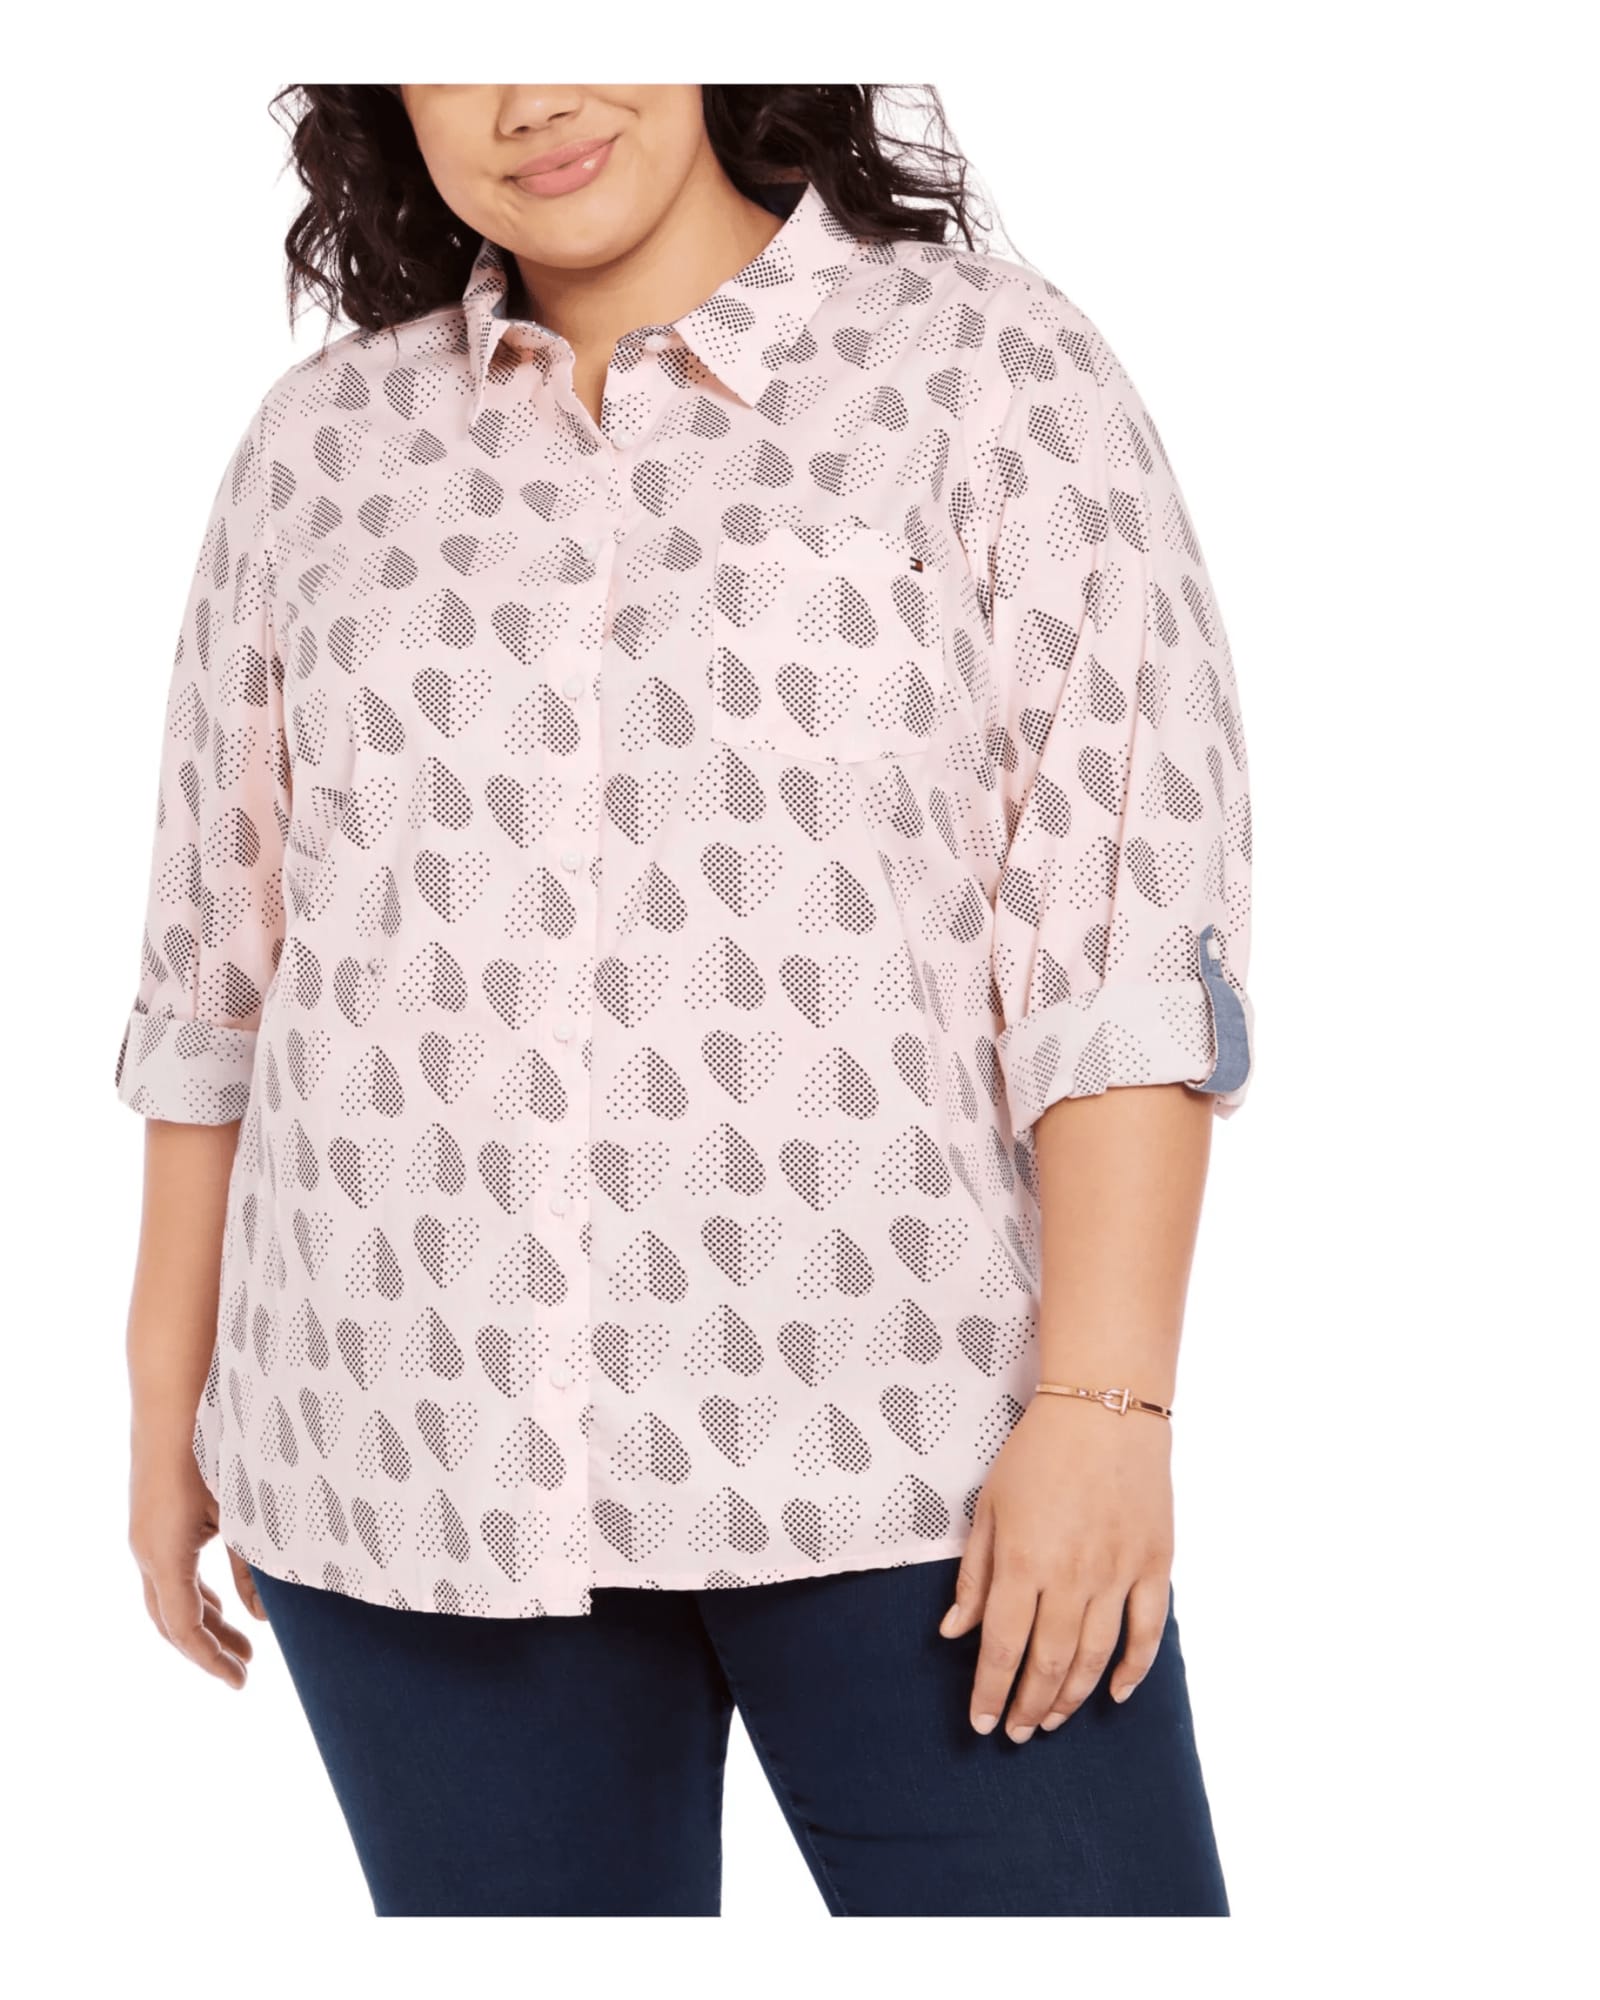 Tommy Hilfiger Women's Plus Size Polka Dot Heart Print Cotton Shirt Pink Size 1X | Pink